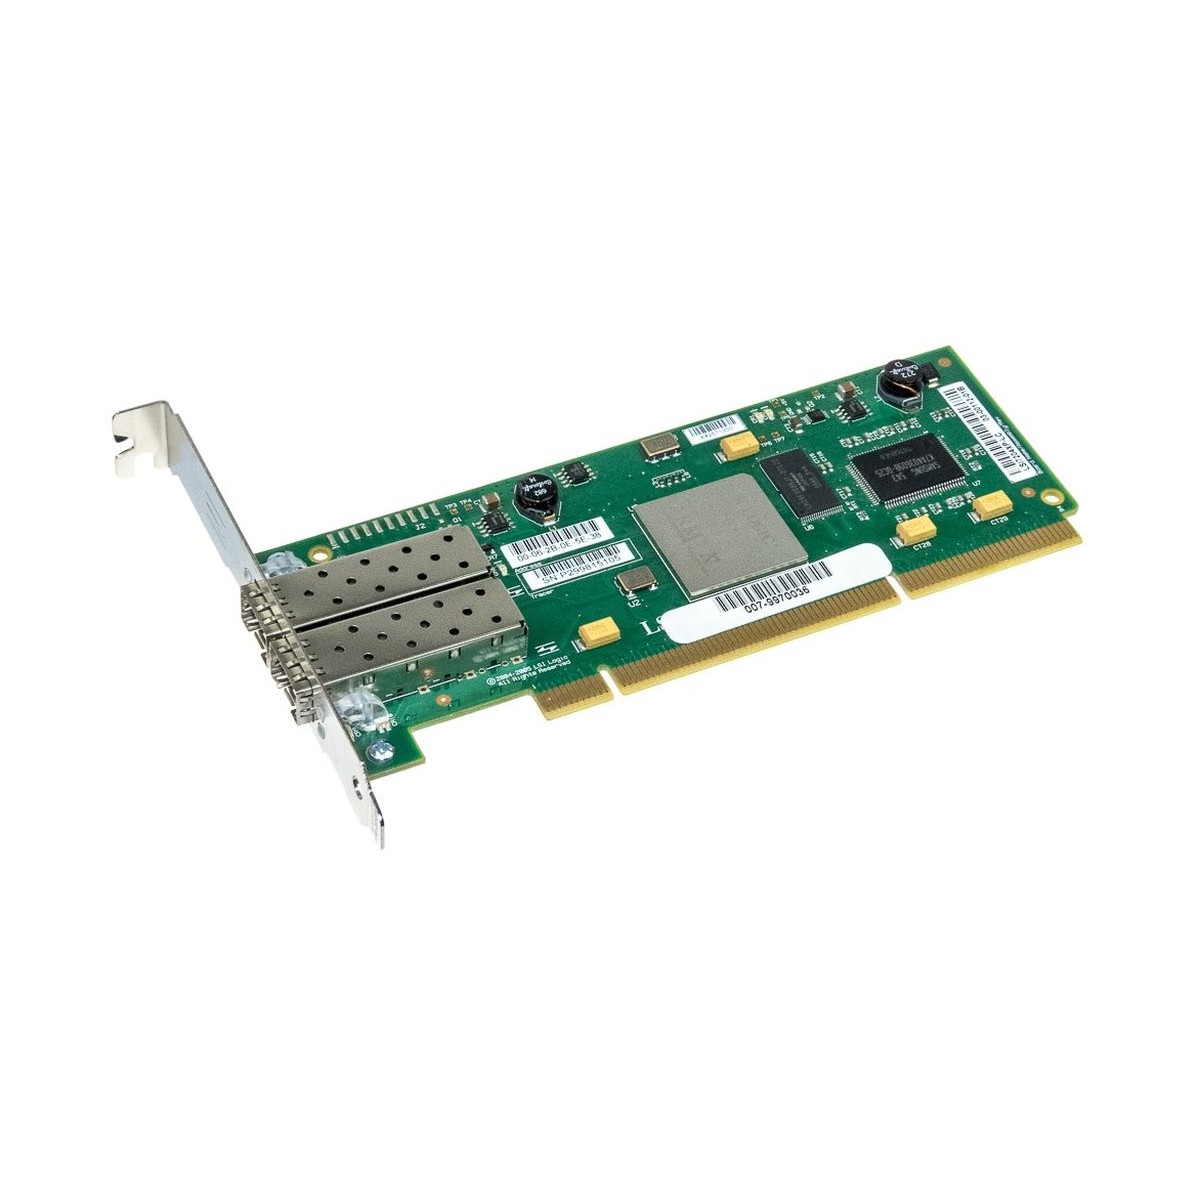 FIBRE CHANNEL LSI7204XP-LC 2x4Gb PCI-X 2xGBIC